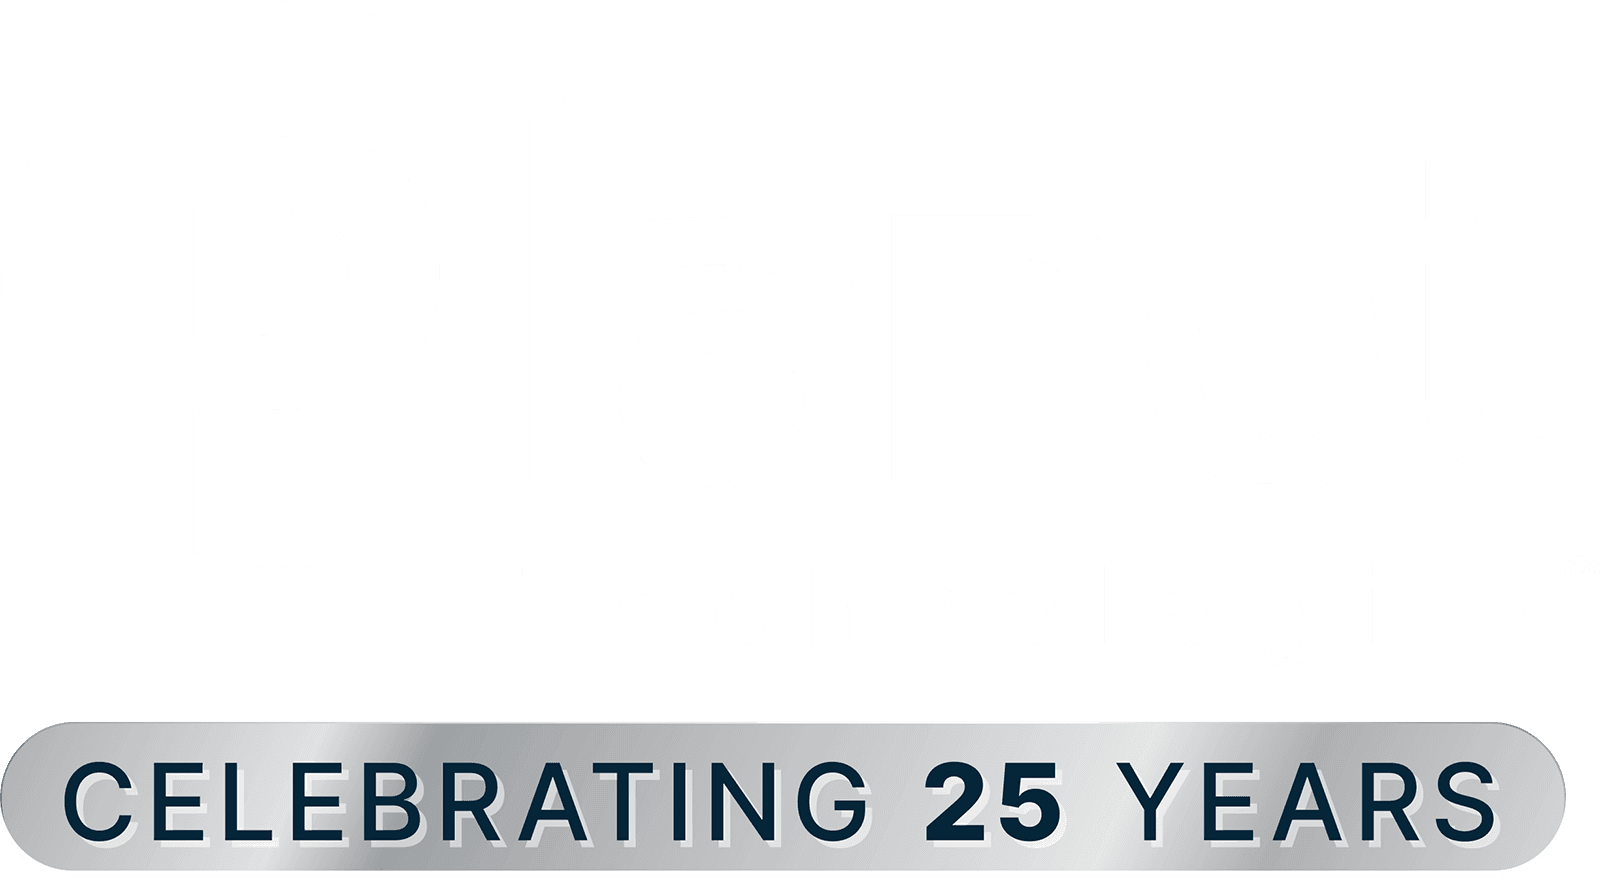 Go-planet.com